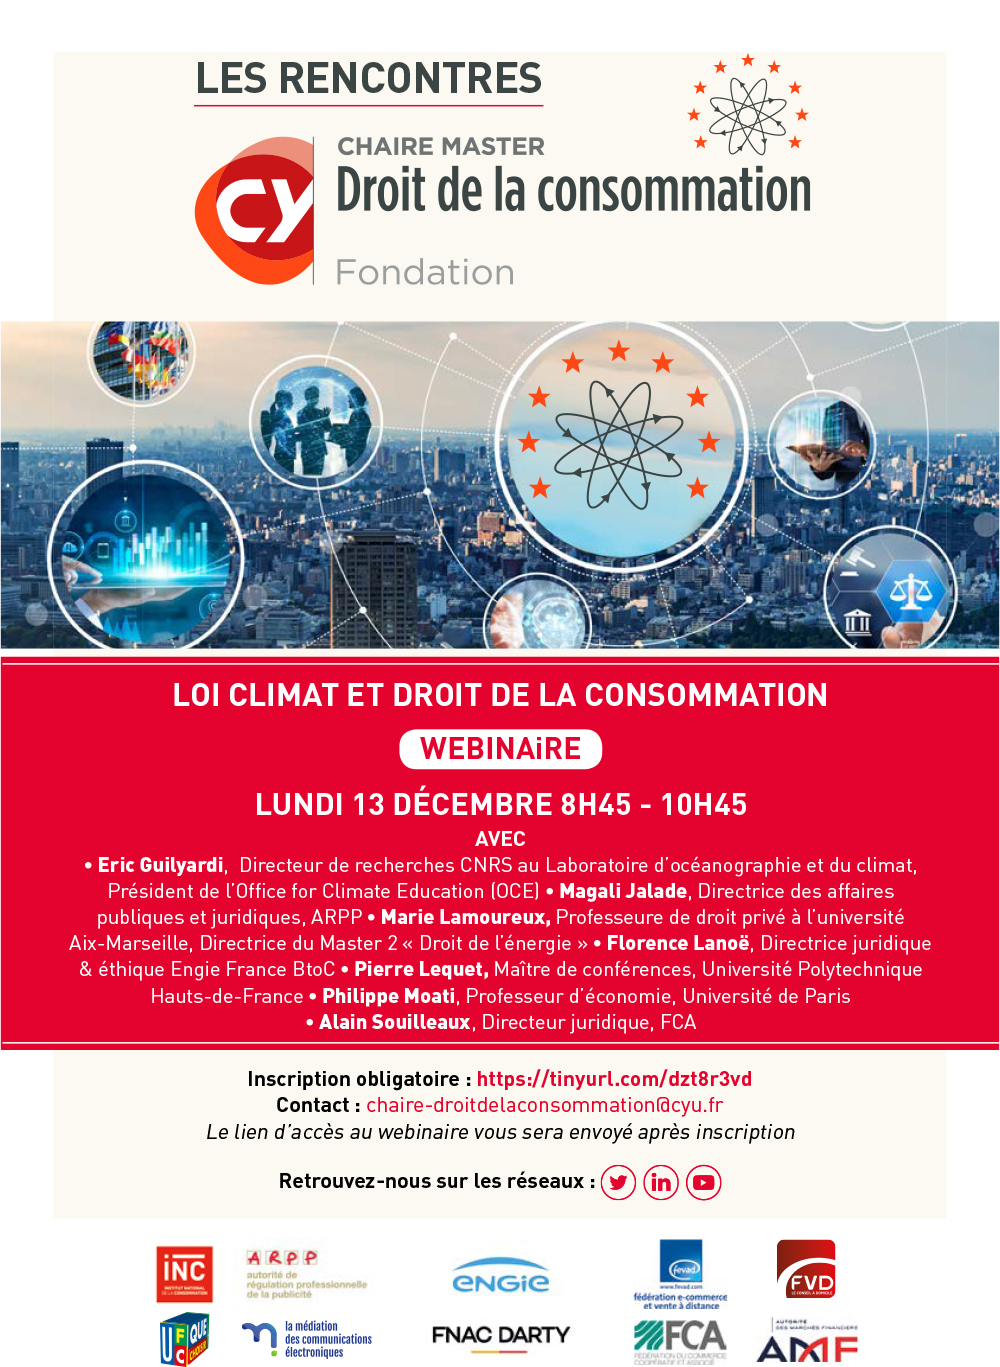 CY-Chaire-Dt-de-la-Conso-Rencontre-13-dec-2021